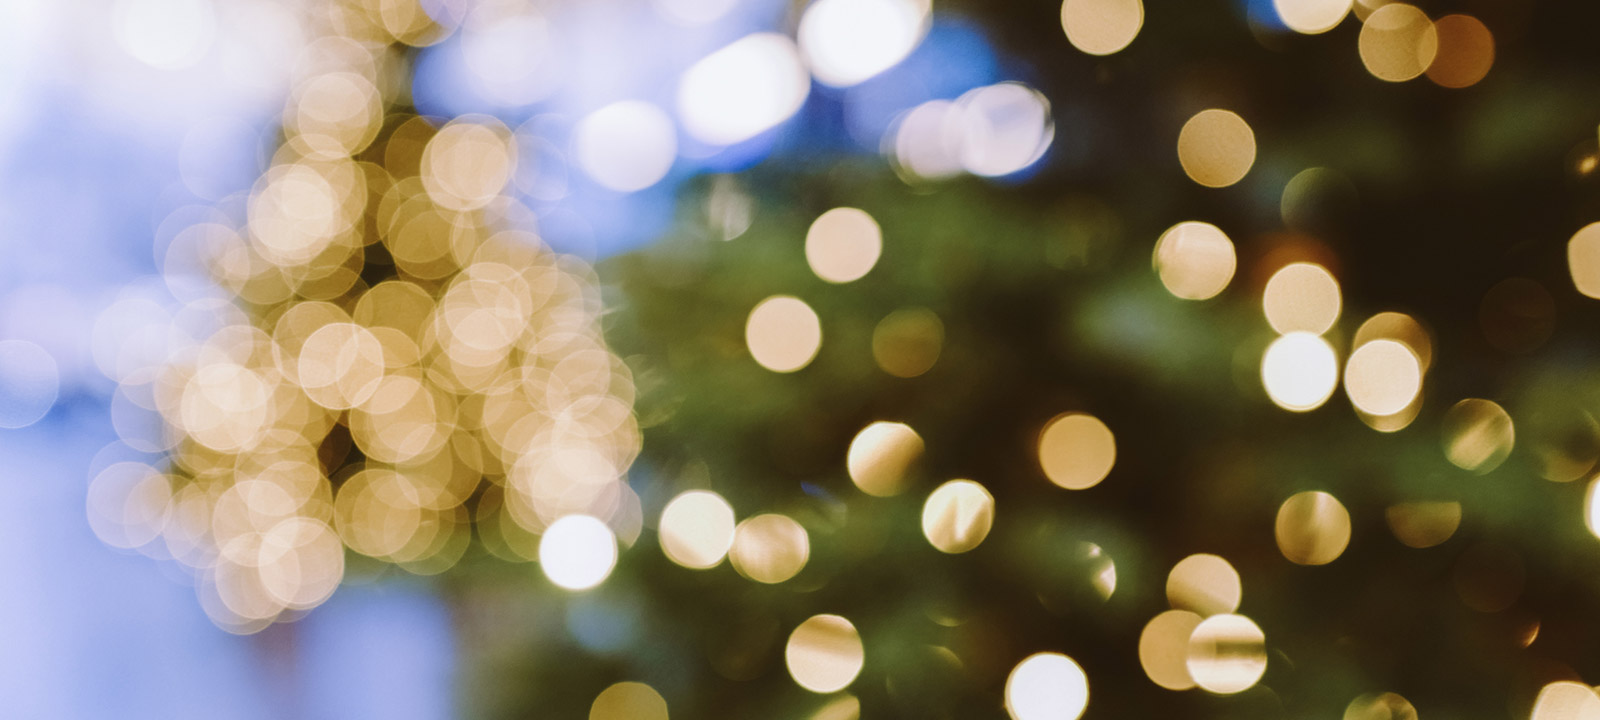 Sự kiện đón Giáng sinh tại Winery Brotherhood đã được bắt đầu, và bạn không muốn bỏ lỡ cảnh sáng đèn cây thông trên khu vườn đầy lãng mạn. Hãy xem bức ảnh liên kết để trải nghiệm không khí Giáng sinh.